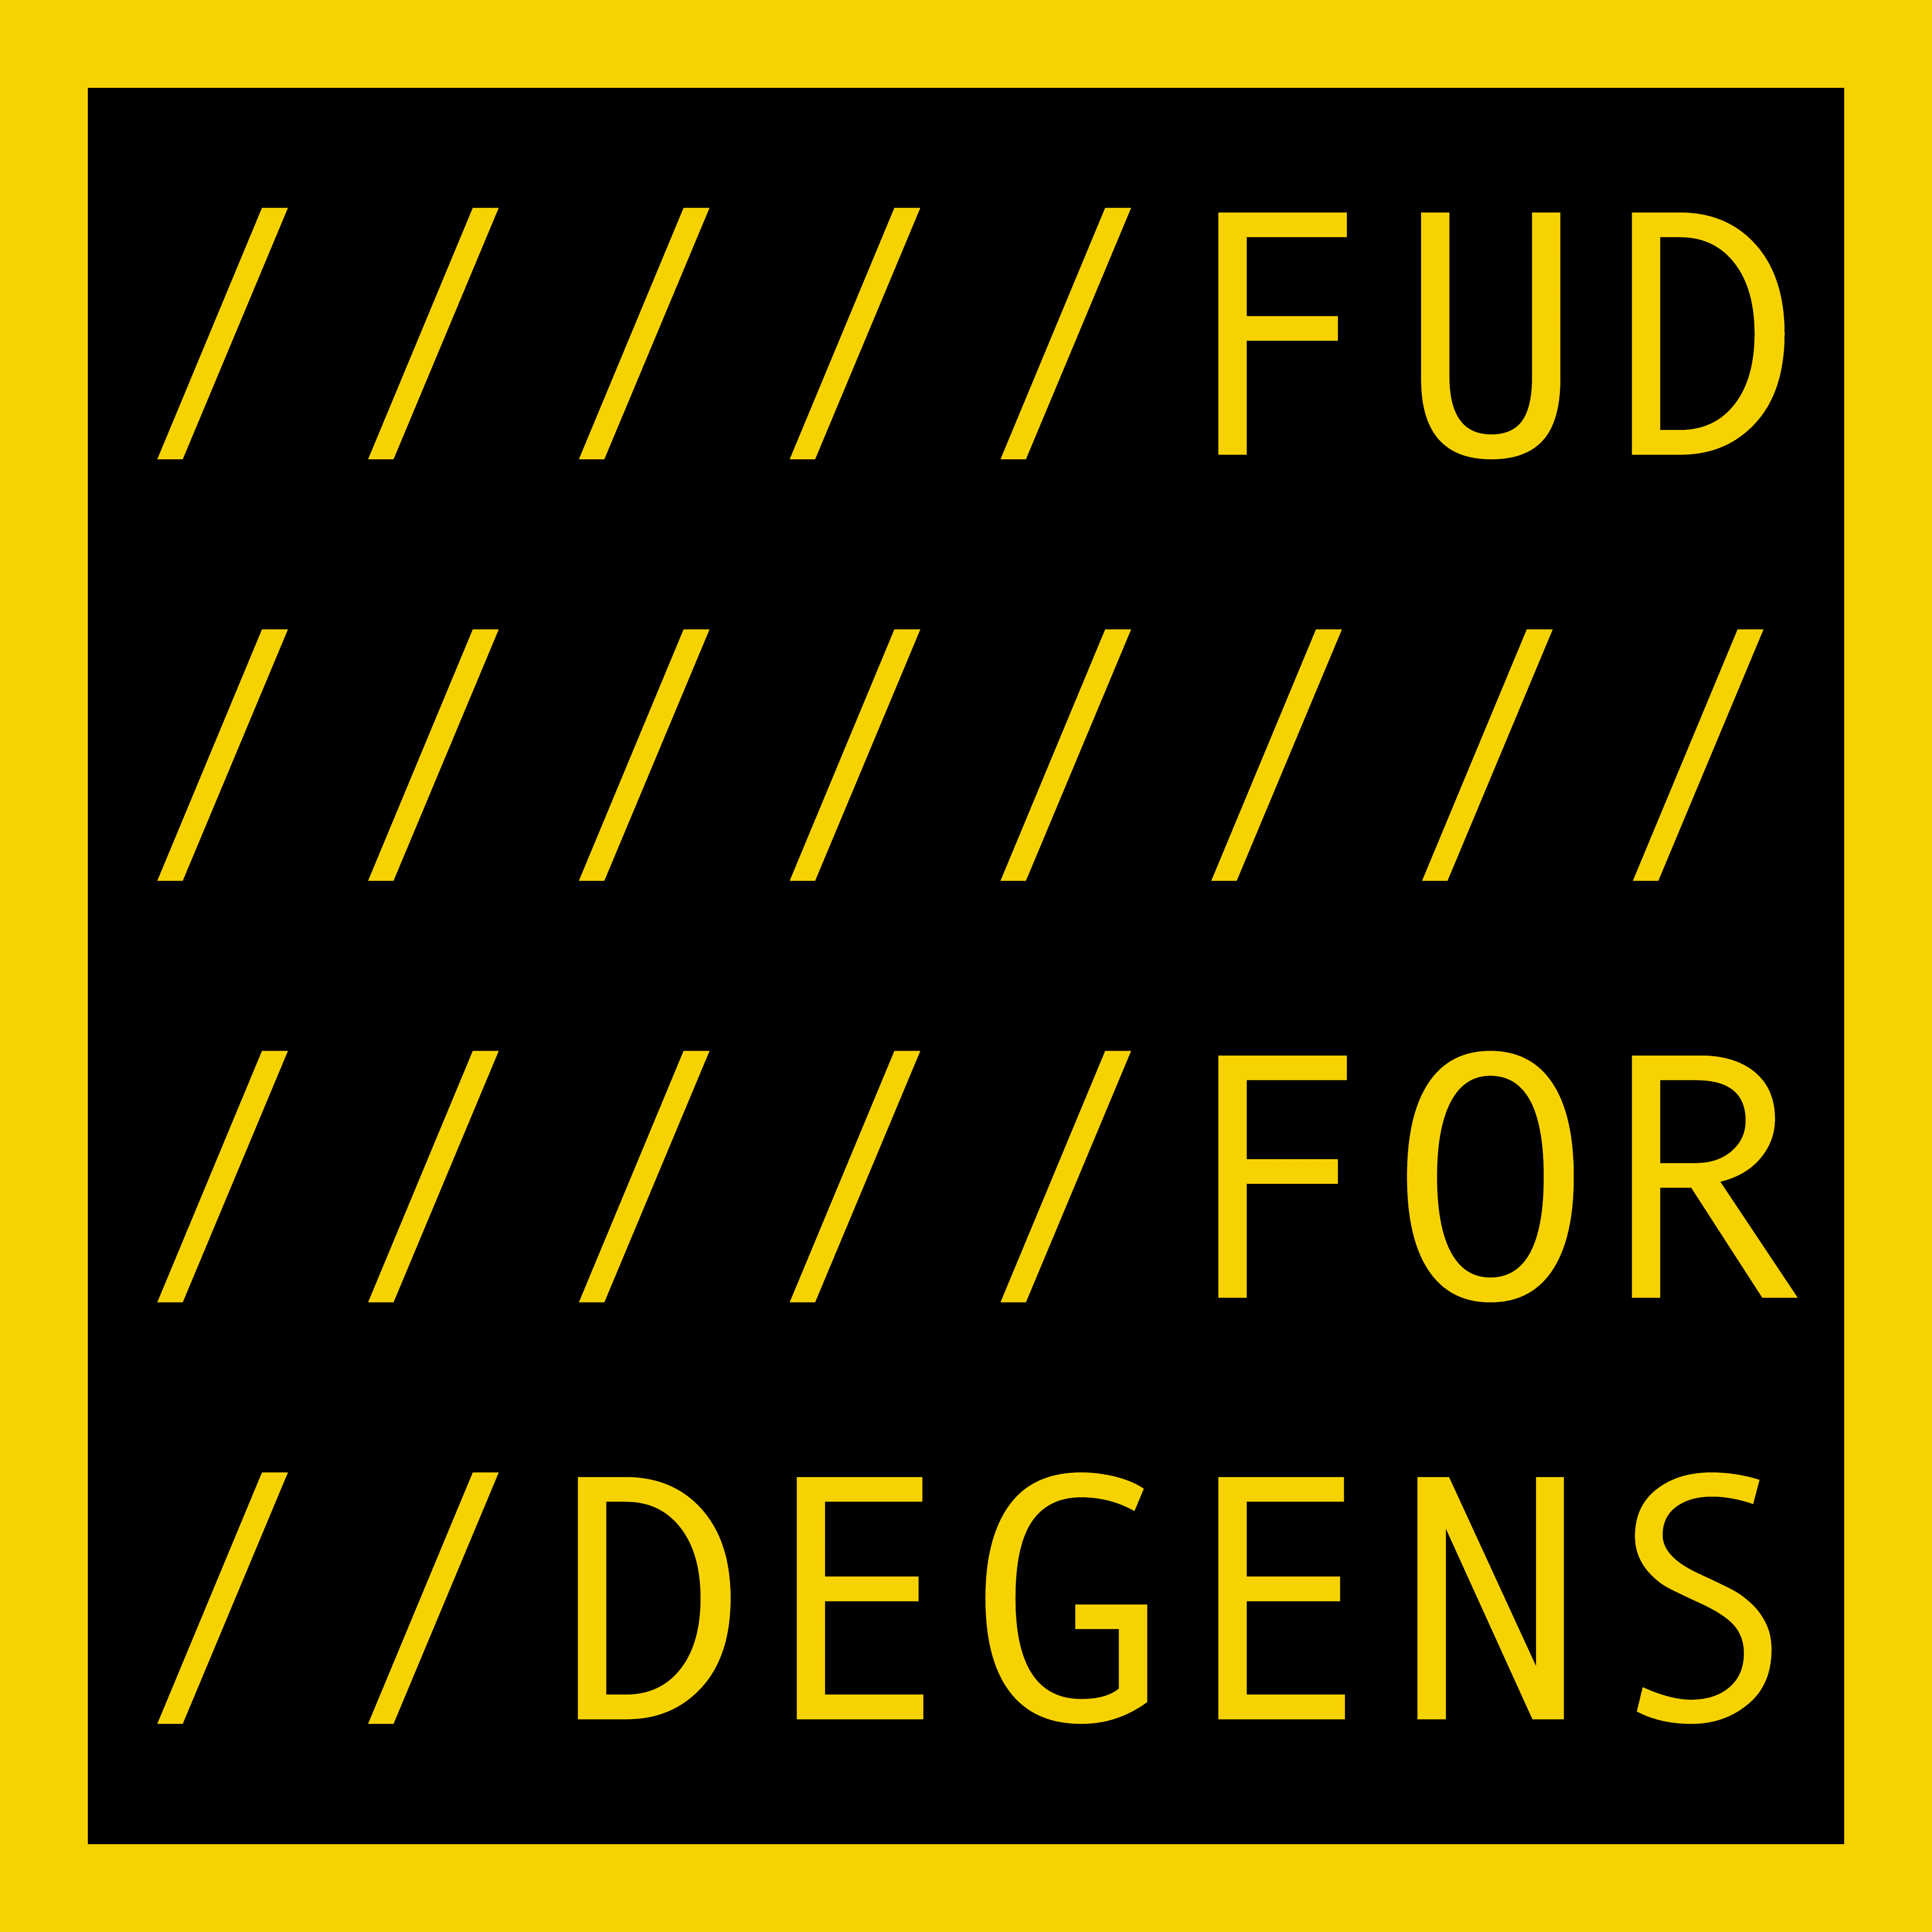 FUD FOR DEGENS